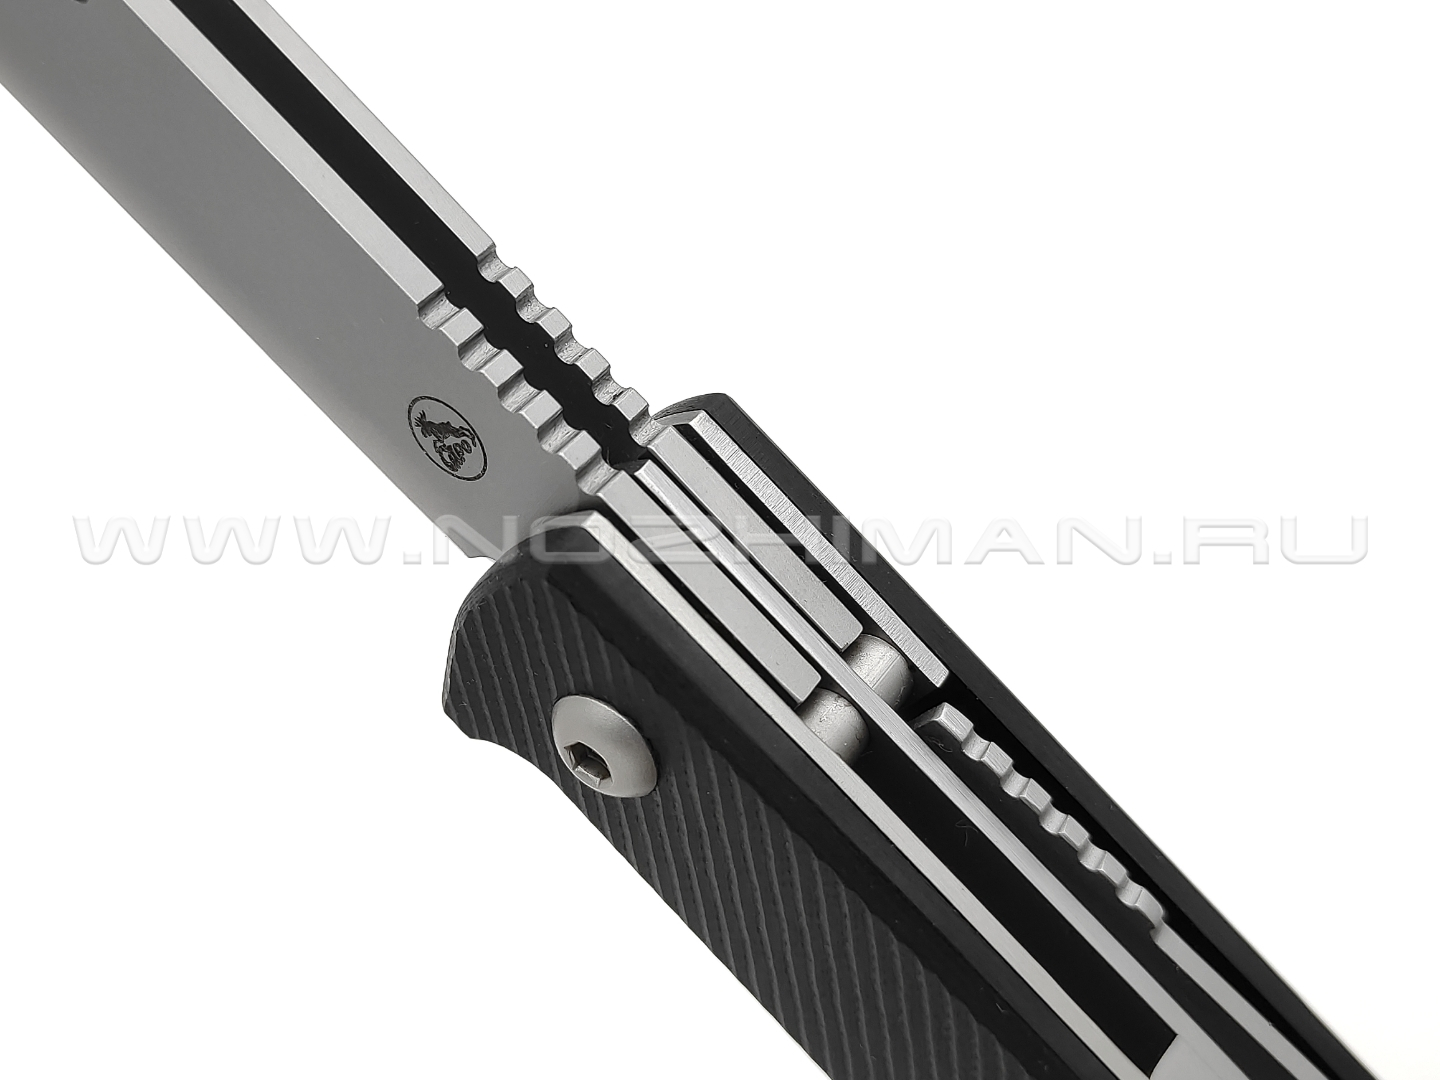 Saro нож Авиационный Next сталь Aus-6, рукоять G10 black